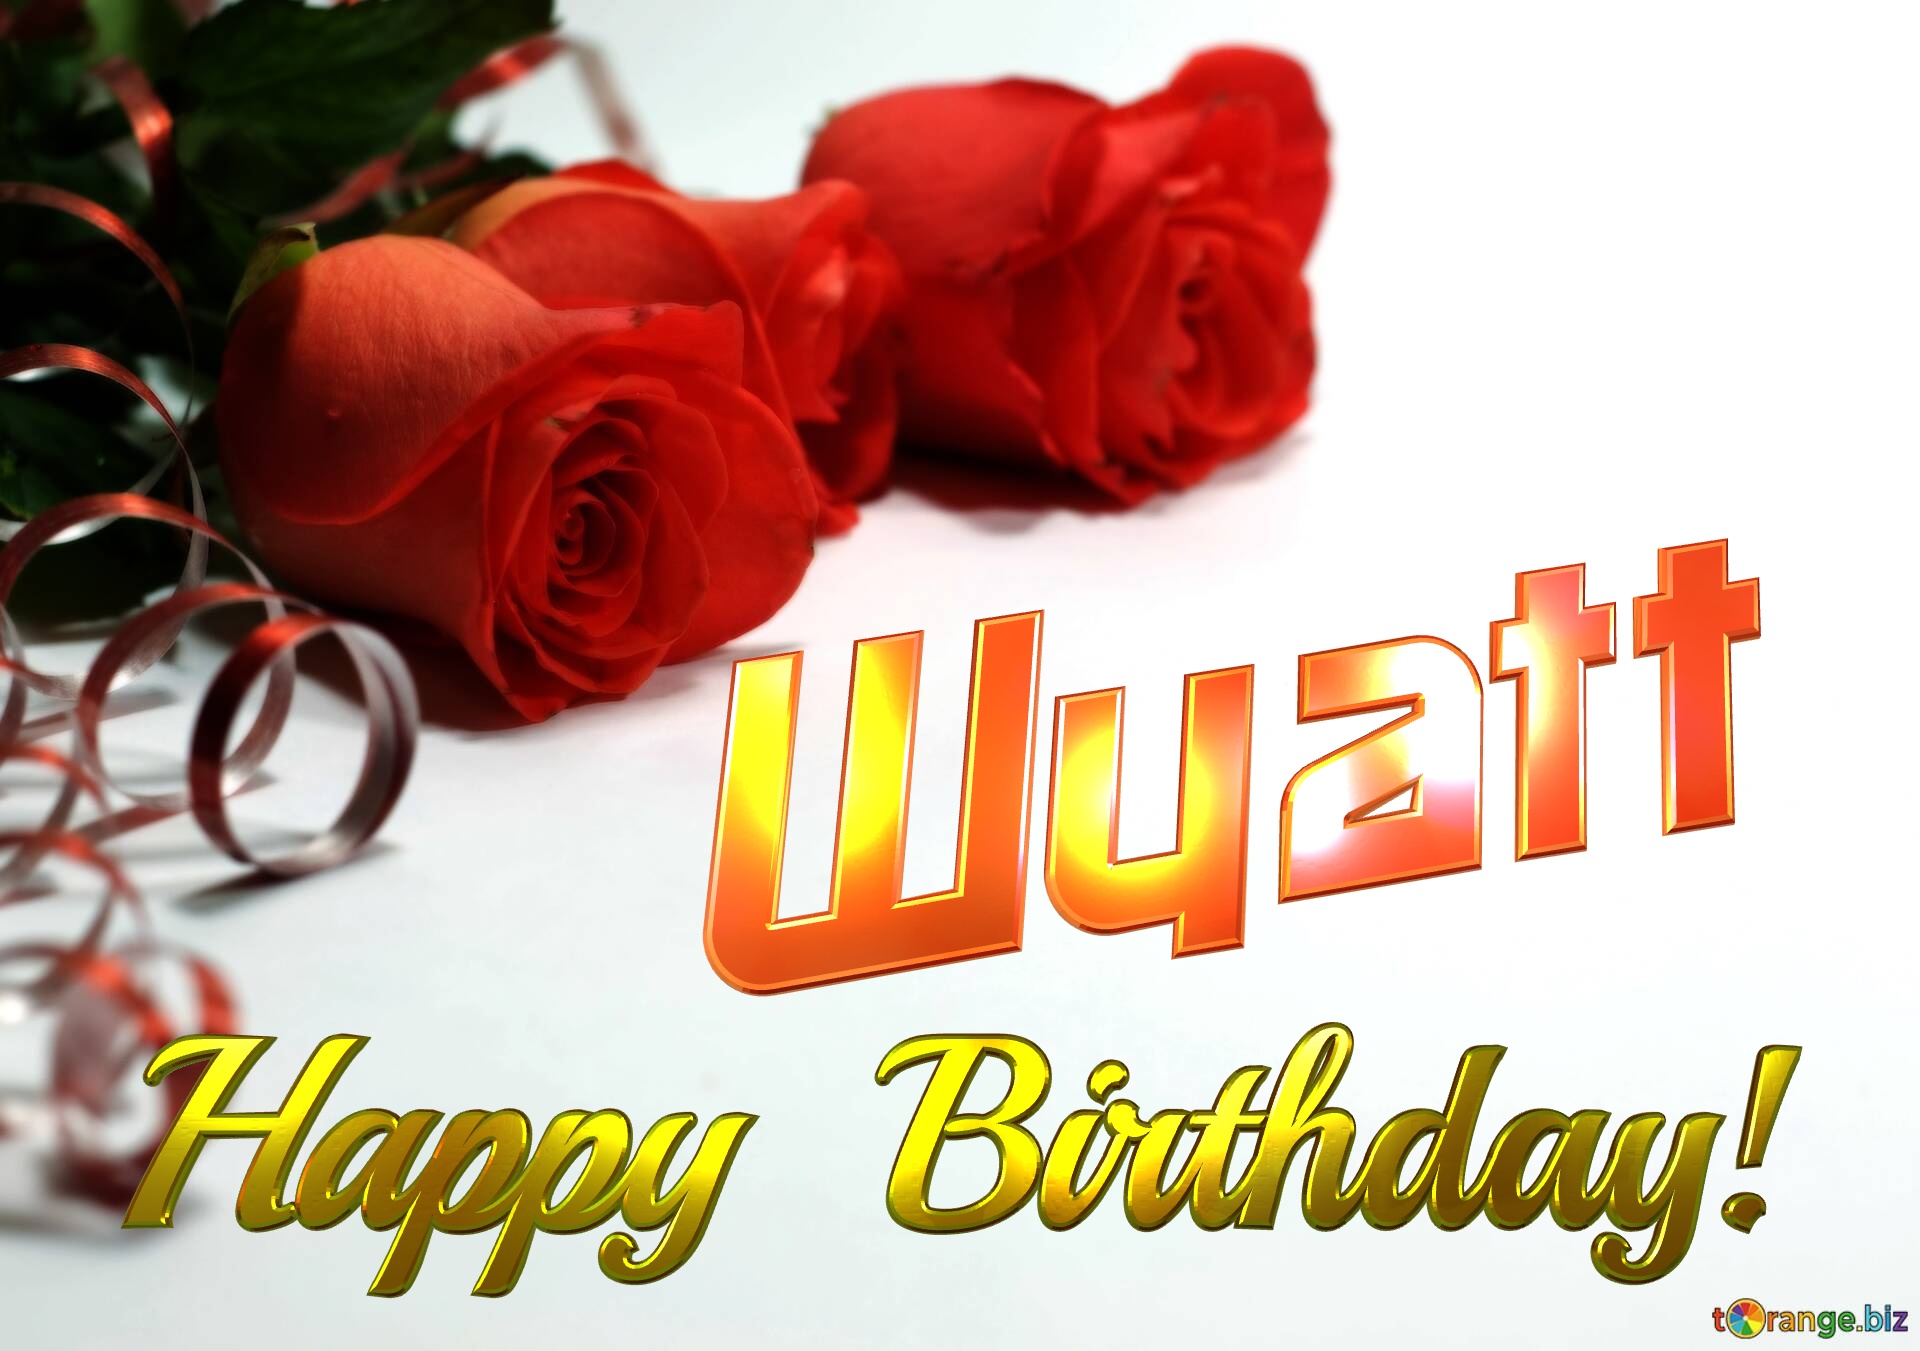 Wyatt   Birthday   Wishes background №0